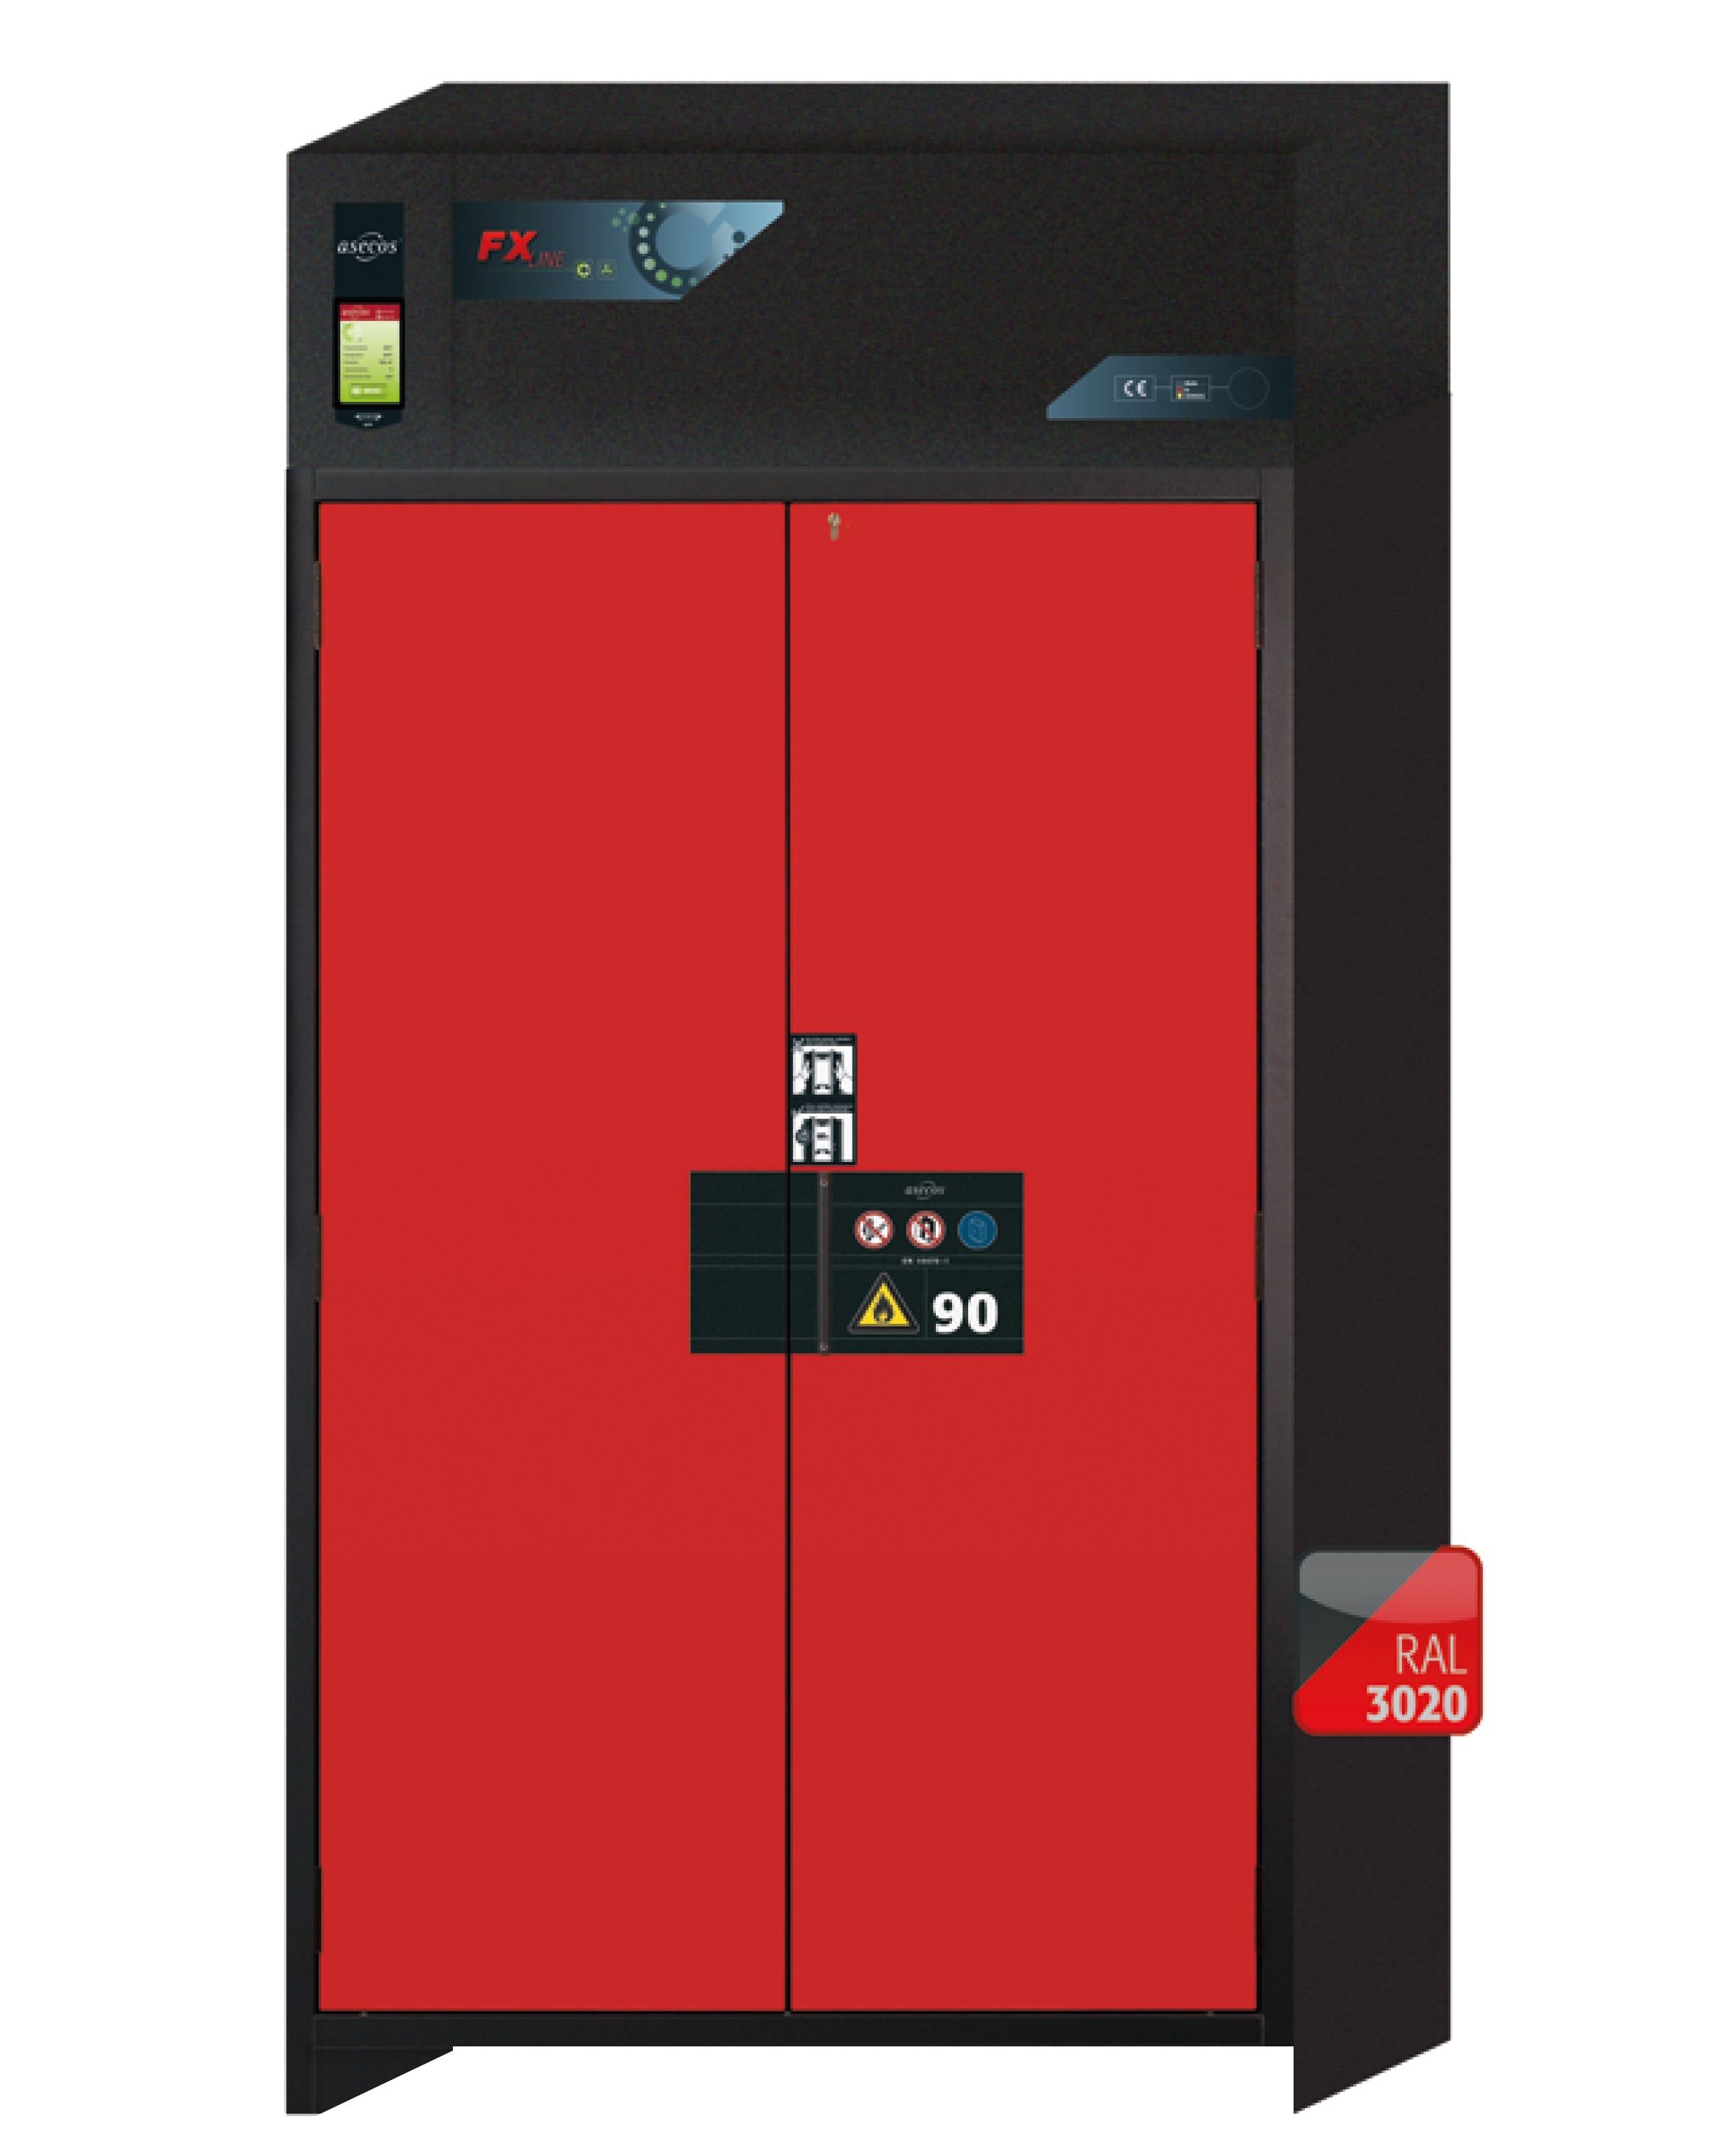 Armoire de filtration d'air de recirculation de type 90 FX-PEGASUS-90 modèle FX90.229.120.WDAC en rouge signalisation RAL 3020 avec 2 étagères standard (acier inoxydable 1.4301)